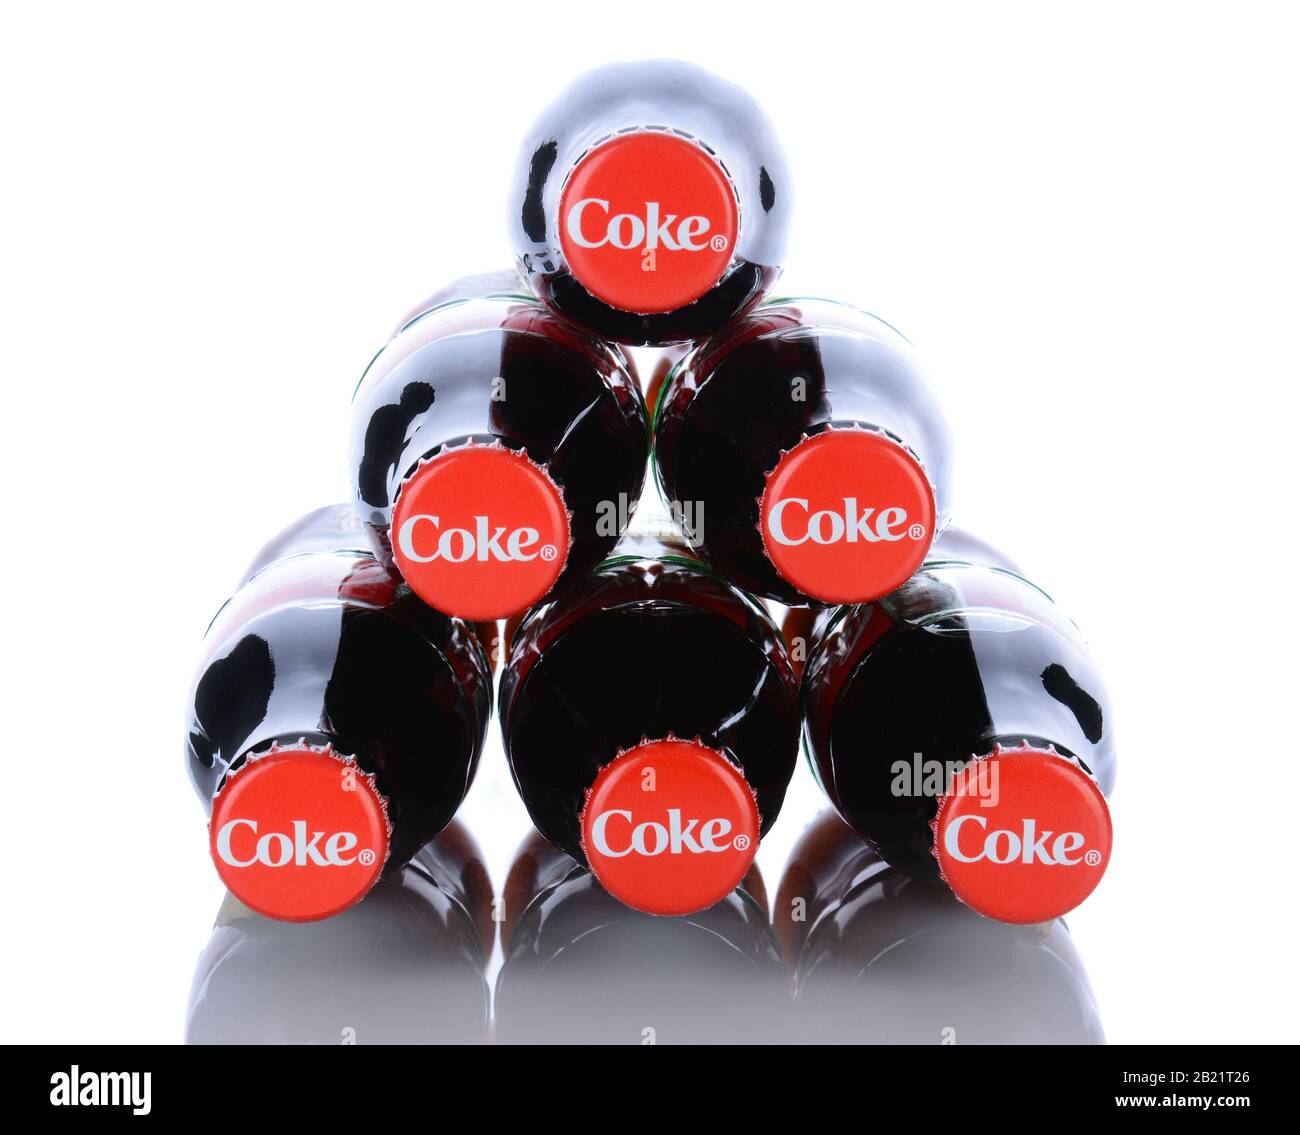 Irvine, CA - 29 janvier 2014 : 6 bouteilles Coca-Cola Classic. Coca-Cola est l'une des boissons gazeuses préférées au monde. Banque D'Images